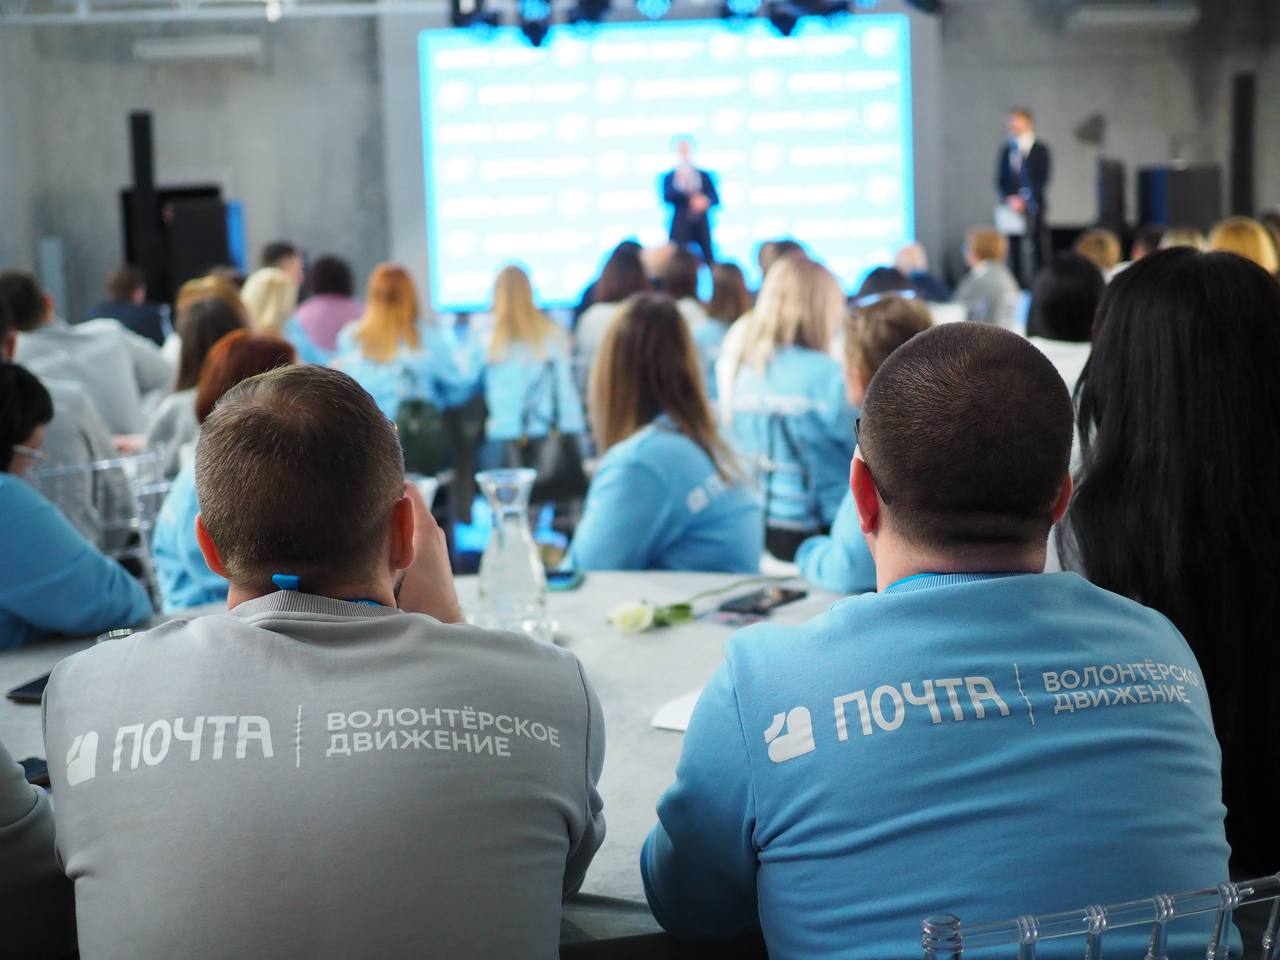 В Москве проходит всероссийская конференция Волонтёрского движения Почты.